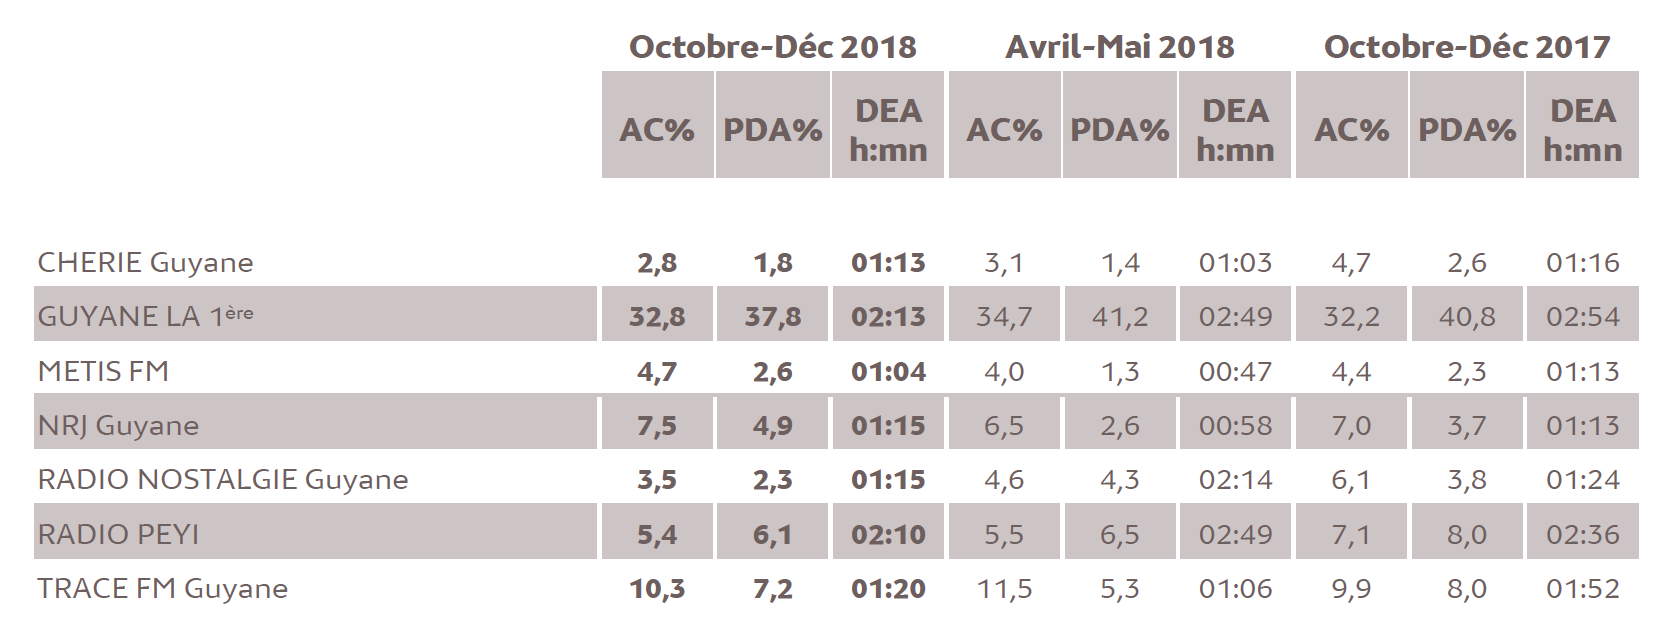 Source : Médiamétrie - Métridom Guyane Octobre-Décembre 2018 - 13 ans et plus - Copyright Médiamétrie - Tous droits réservés